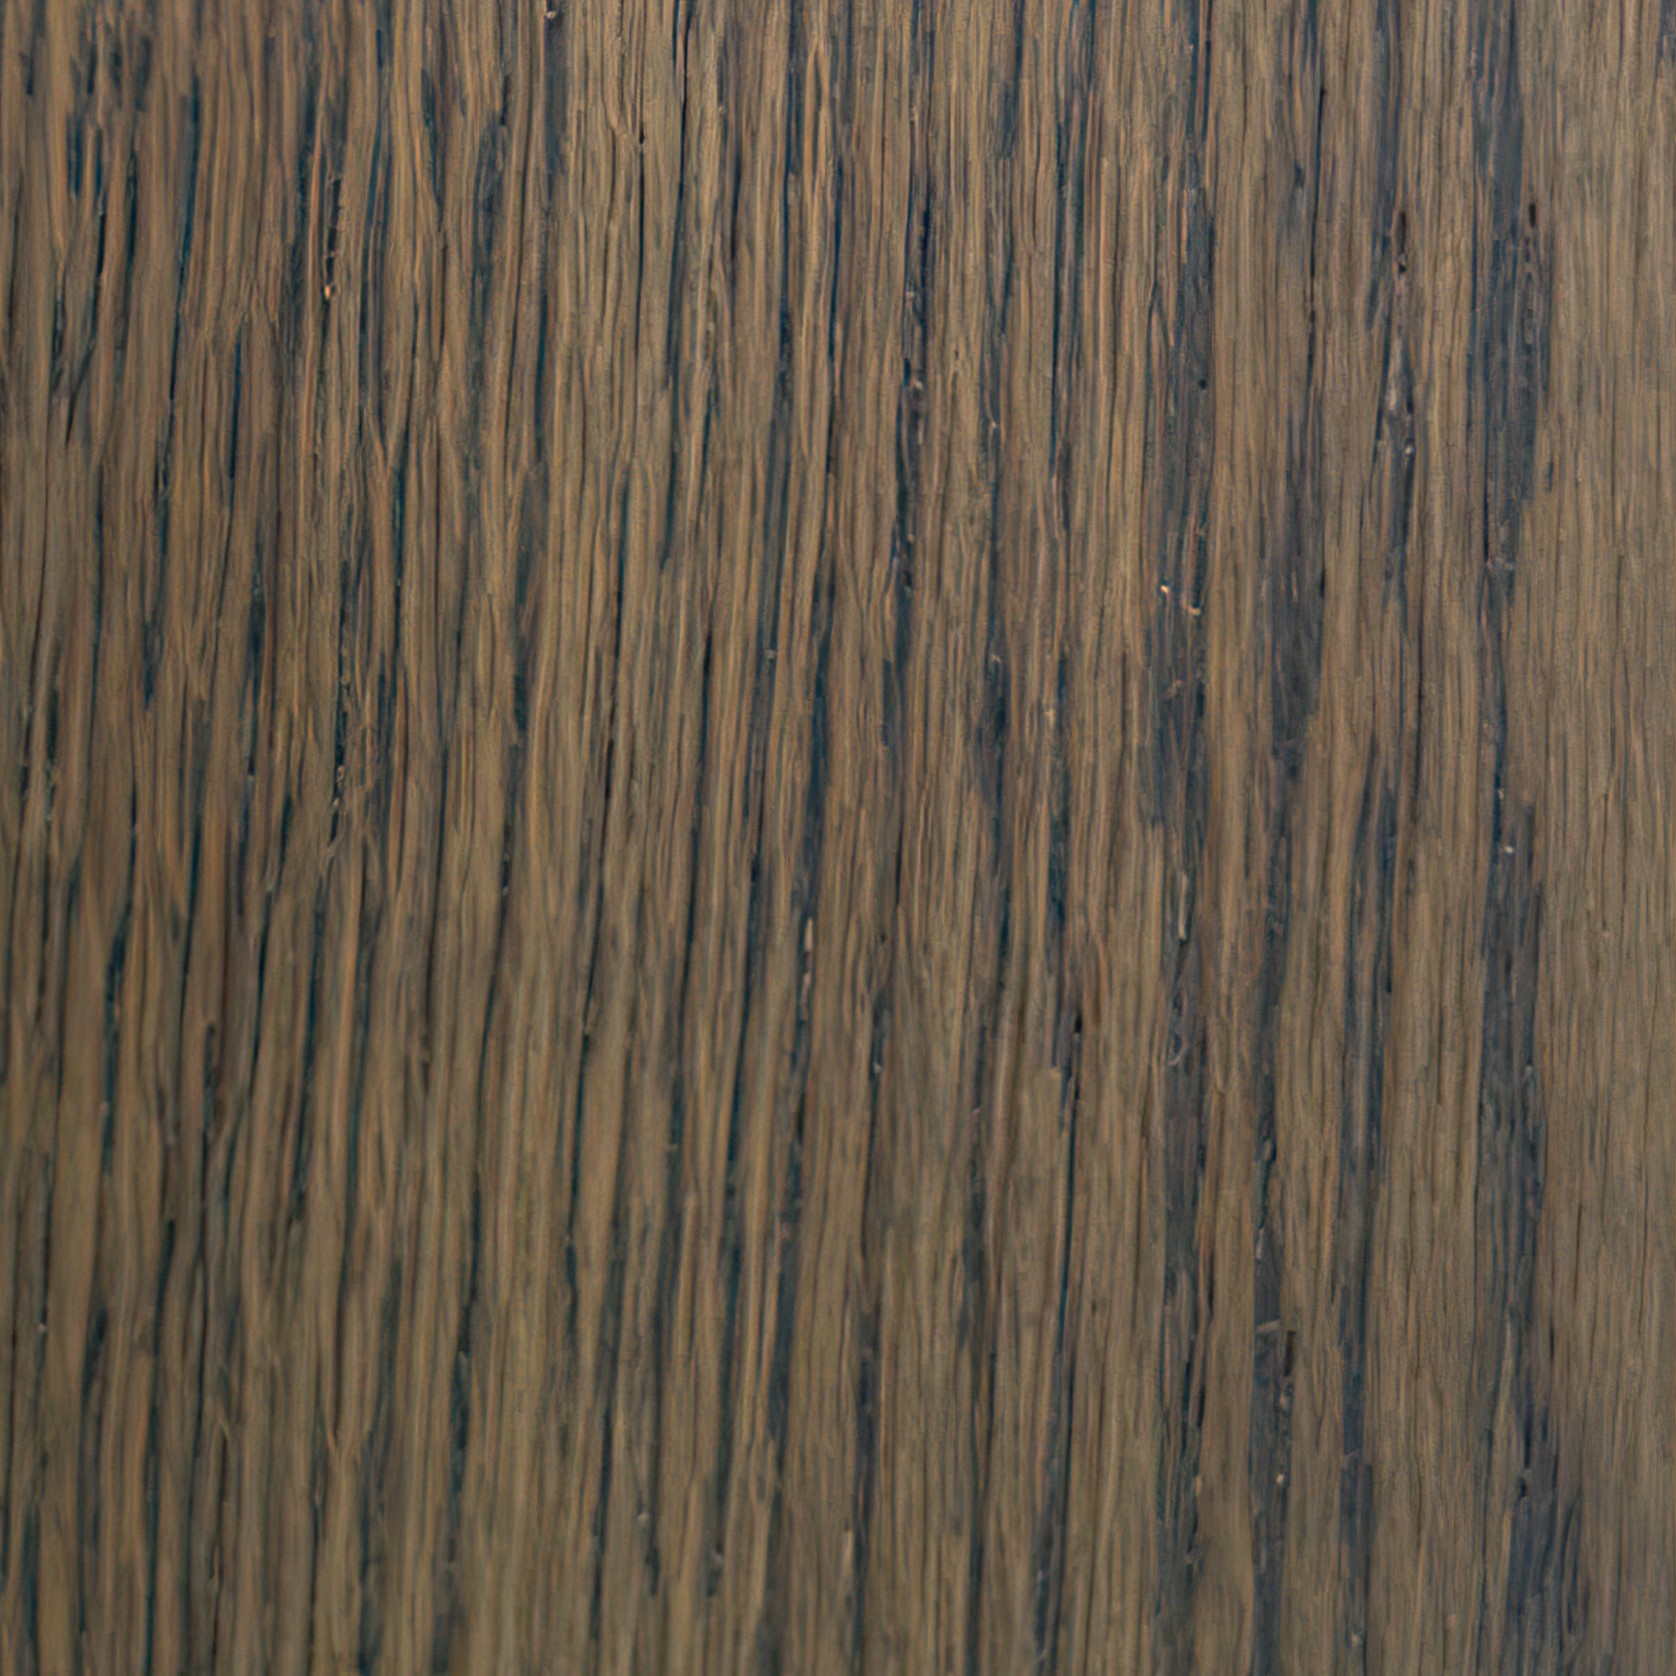 Merapi Oiled Wood Flooring gallery detail image